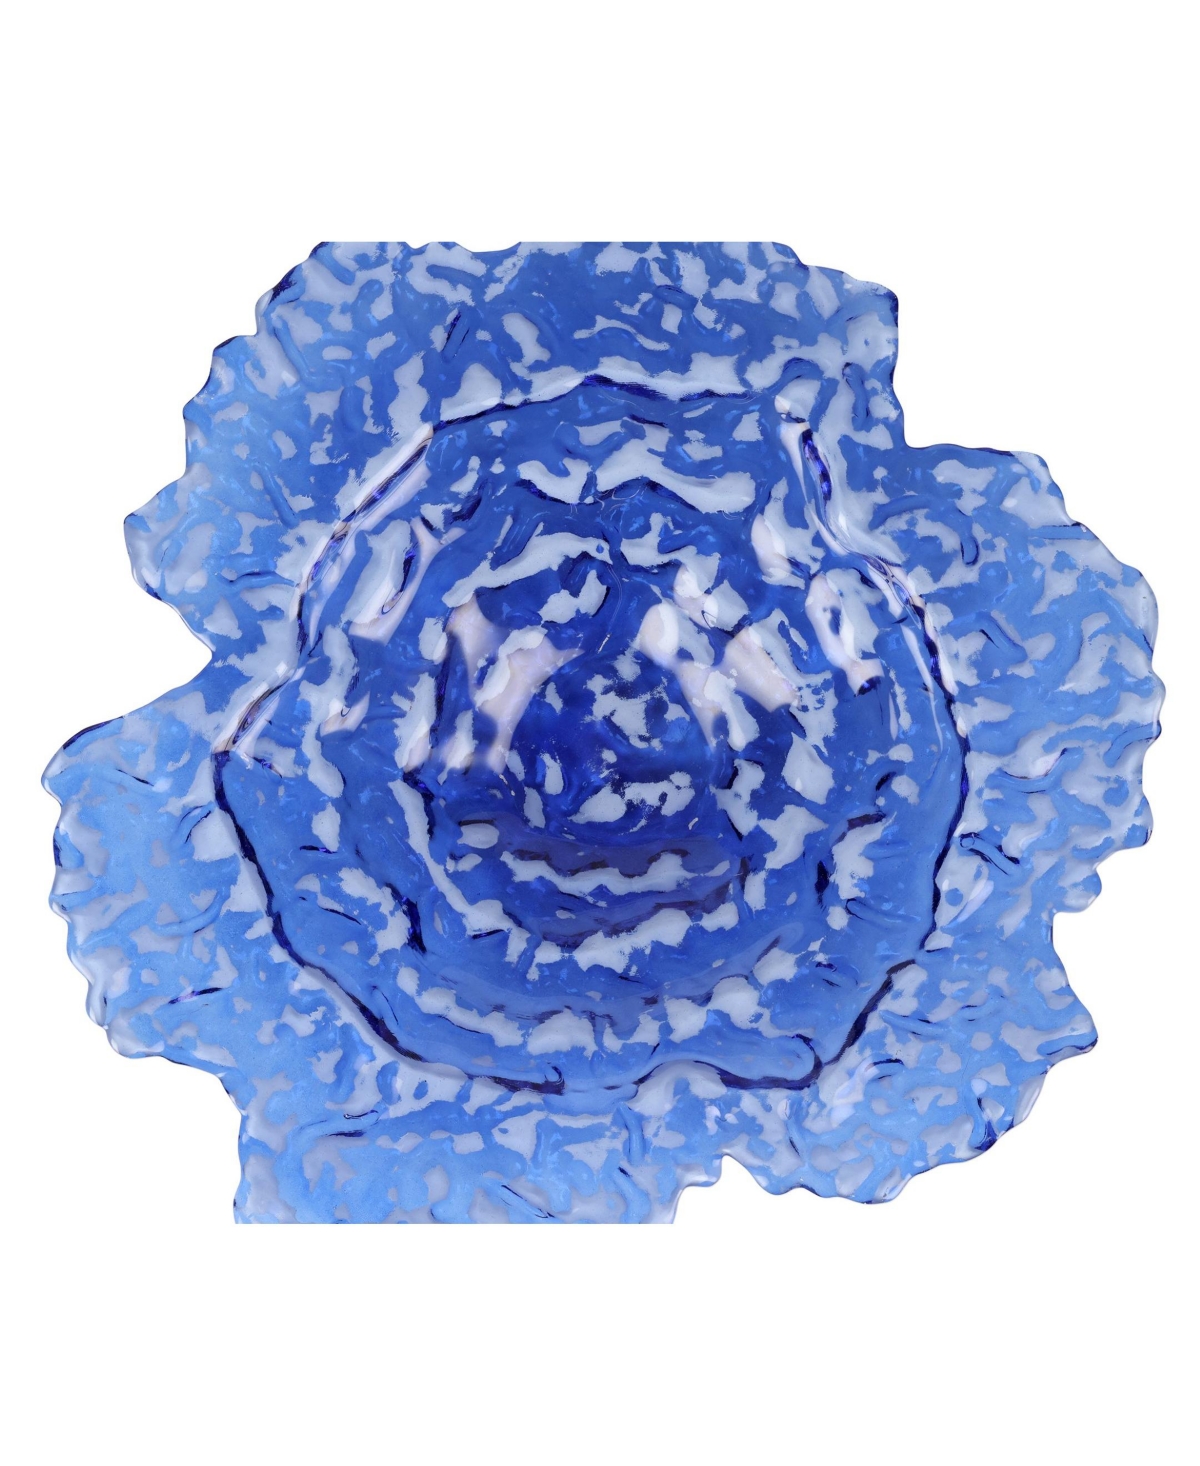 Vietri Ostrica Glass Centerpiece In Blue